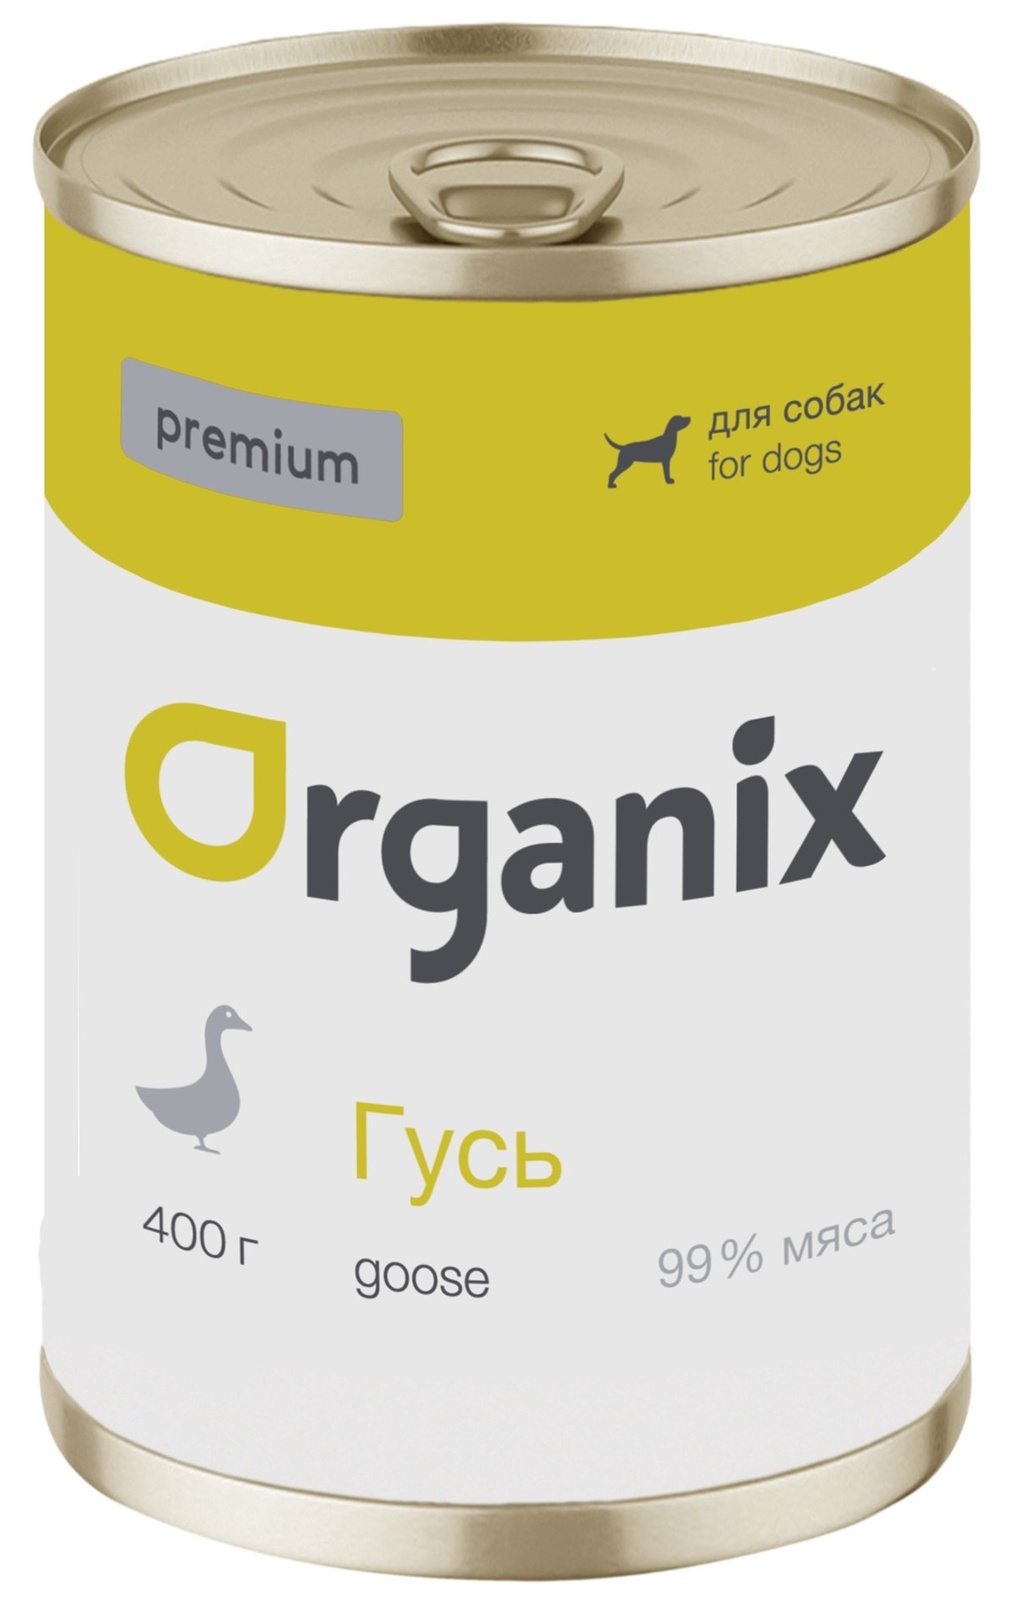 Organix консервы Organix монобелковые премиум консервы для собак, с гусем (100 г) organix консервы organix монобелковые премиум консервы для собак с уткой 100 г